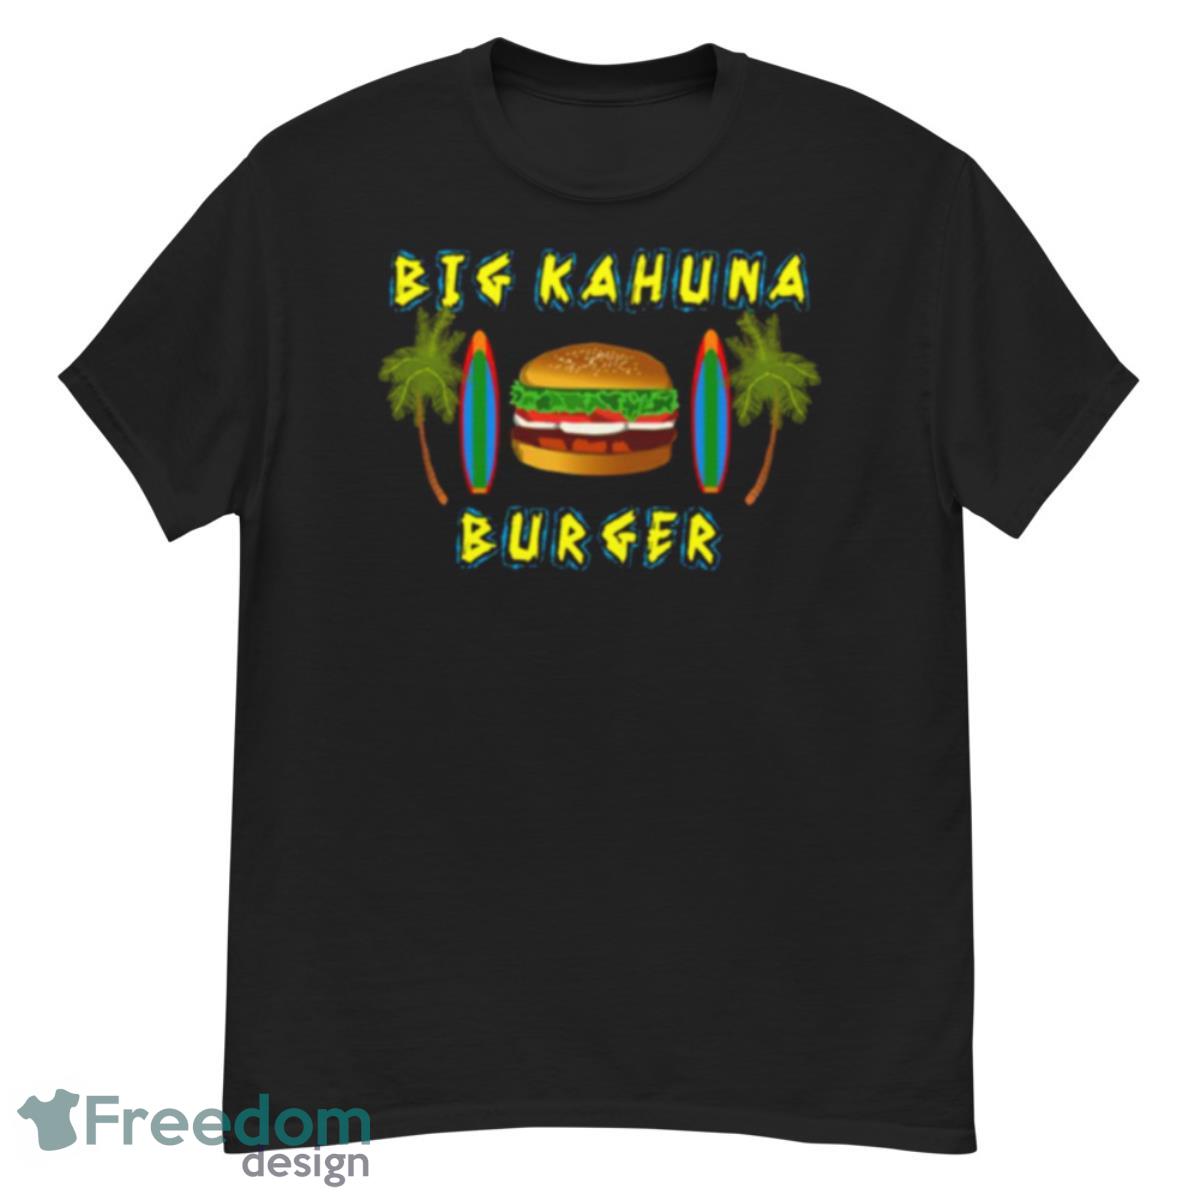 Pulp Fiction Big Kahuna Burger shirt - G500 Men’s Classic T-Shirt